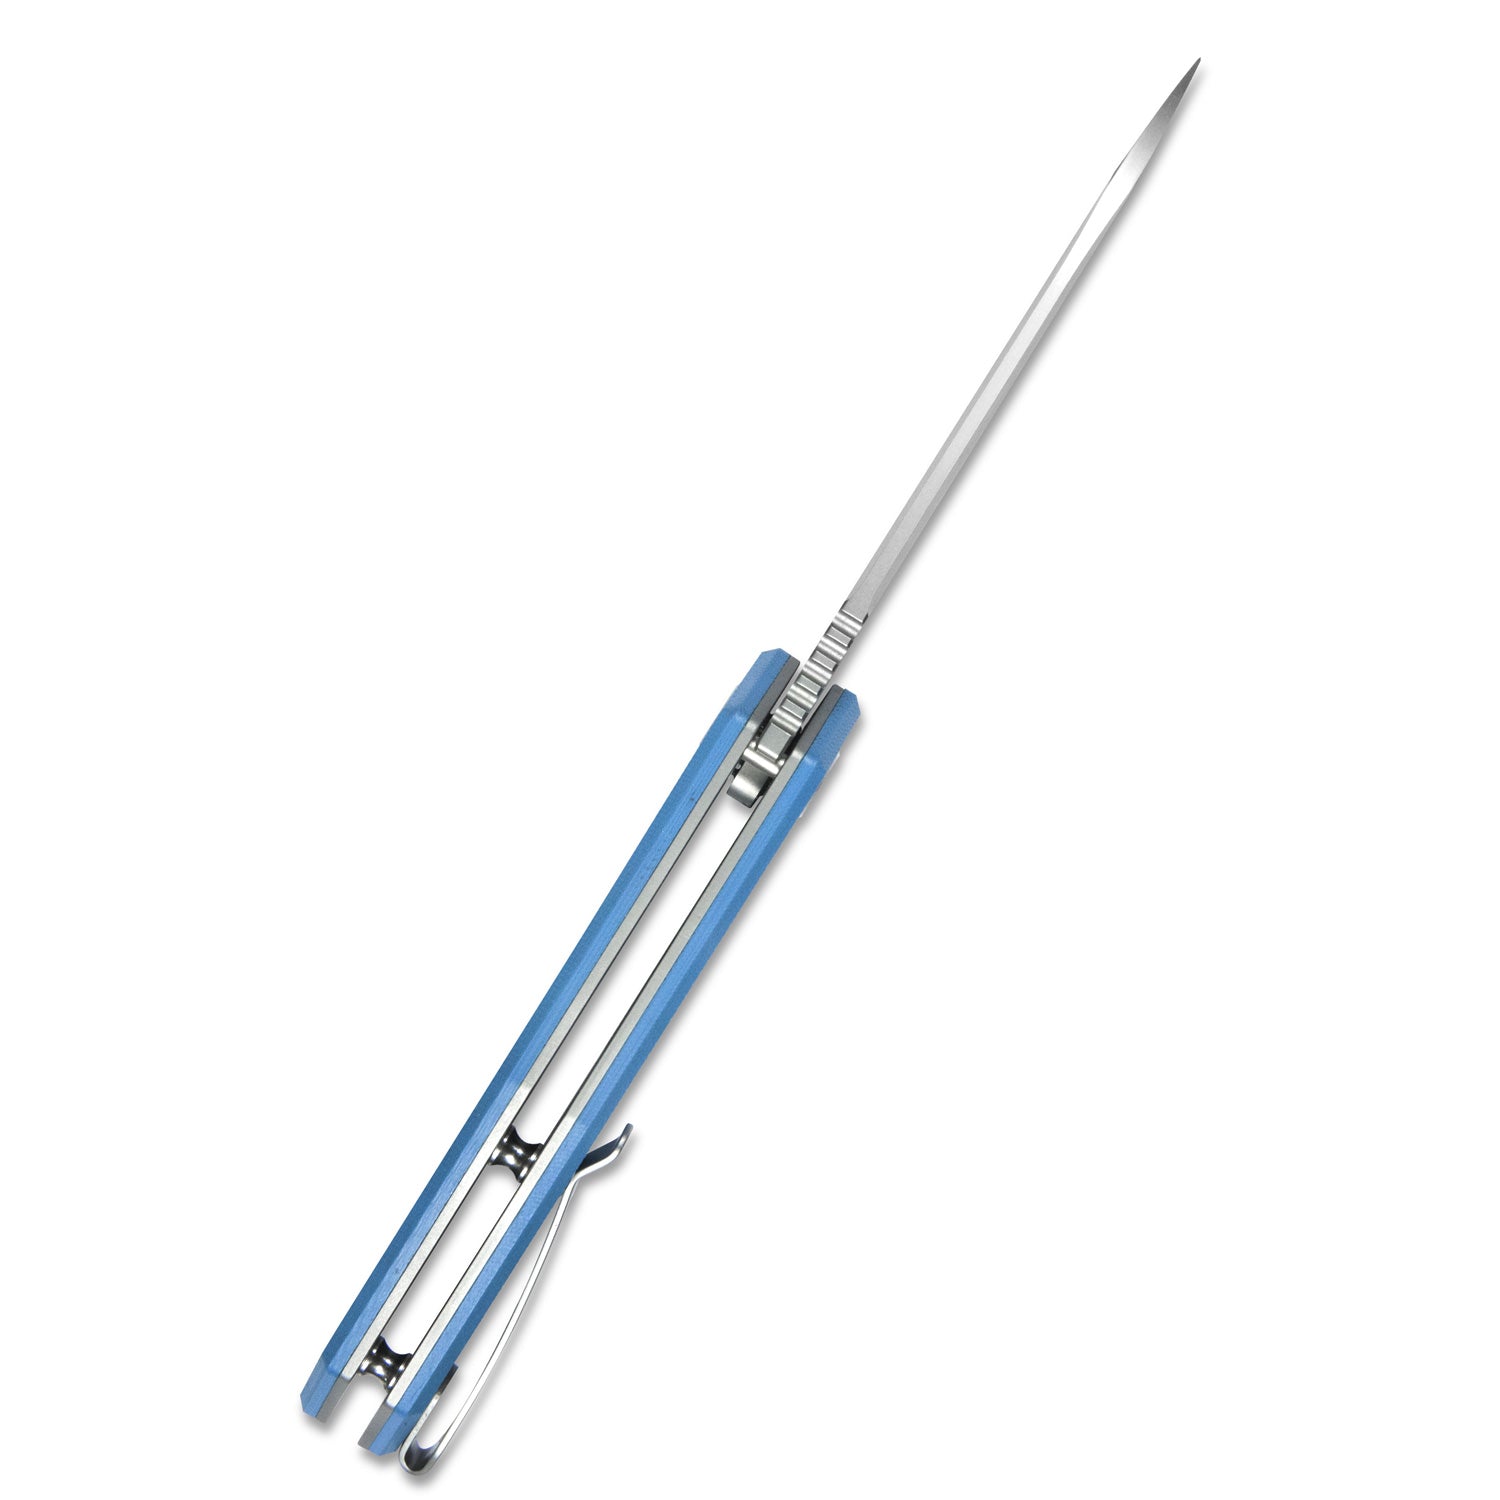 Kubey Vagrant Liner Lock Folding Knife Blue G10 Handle (3.1" Sandblast AUS-10) KU291C